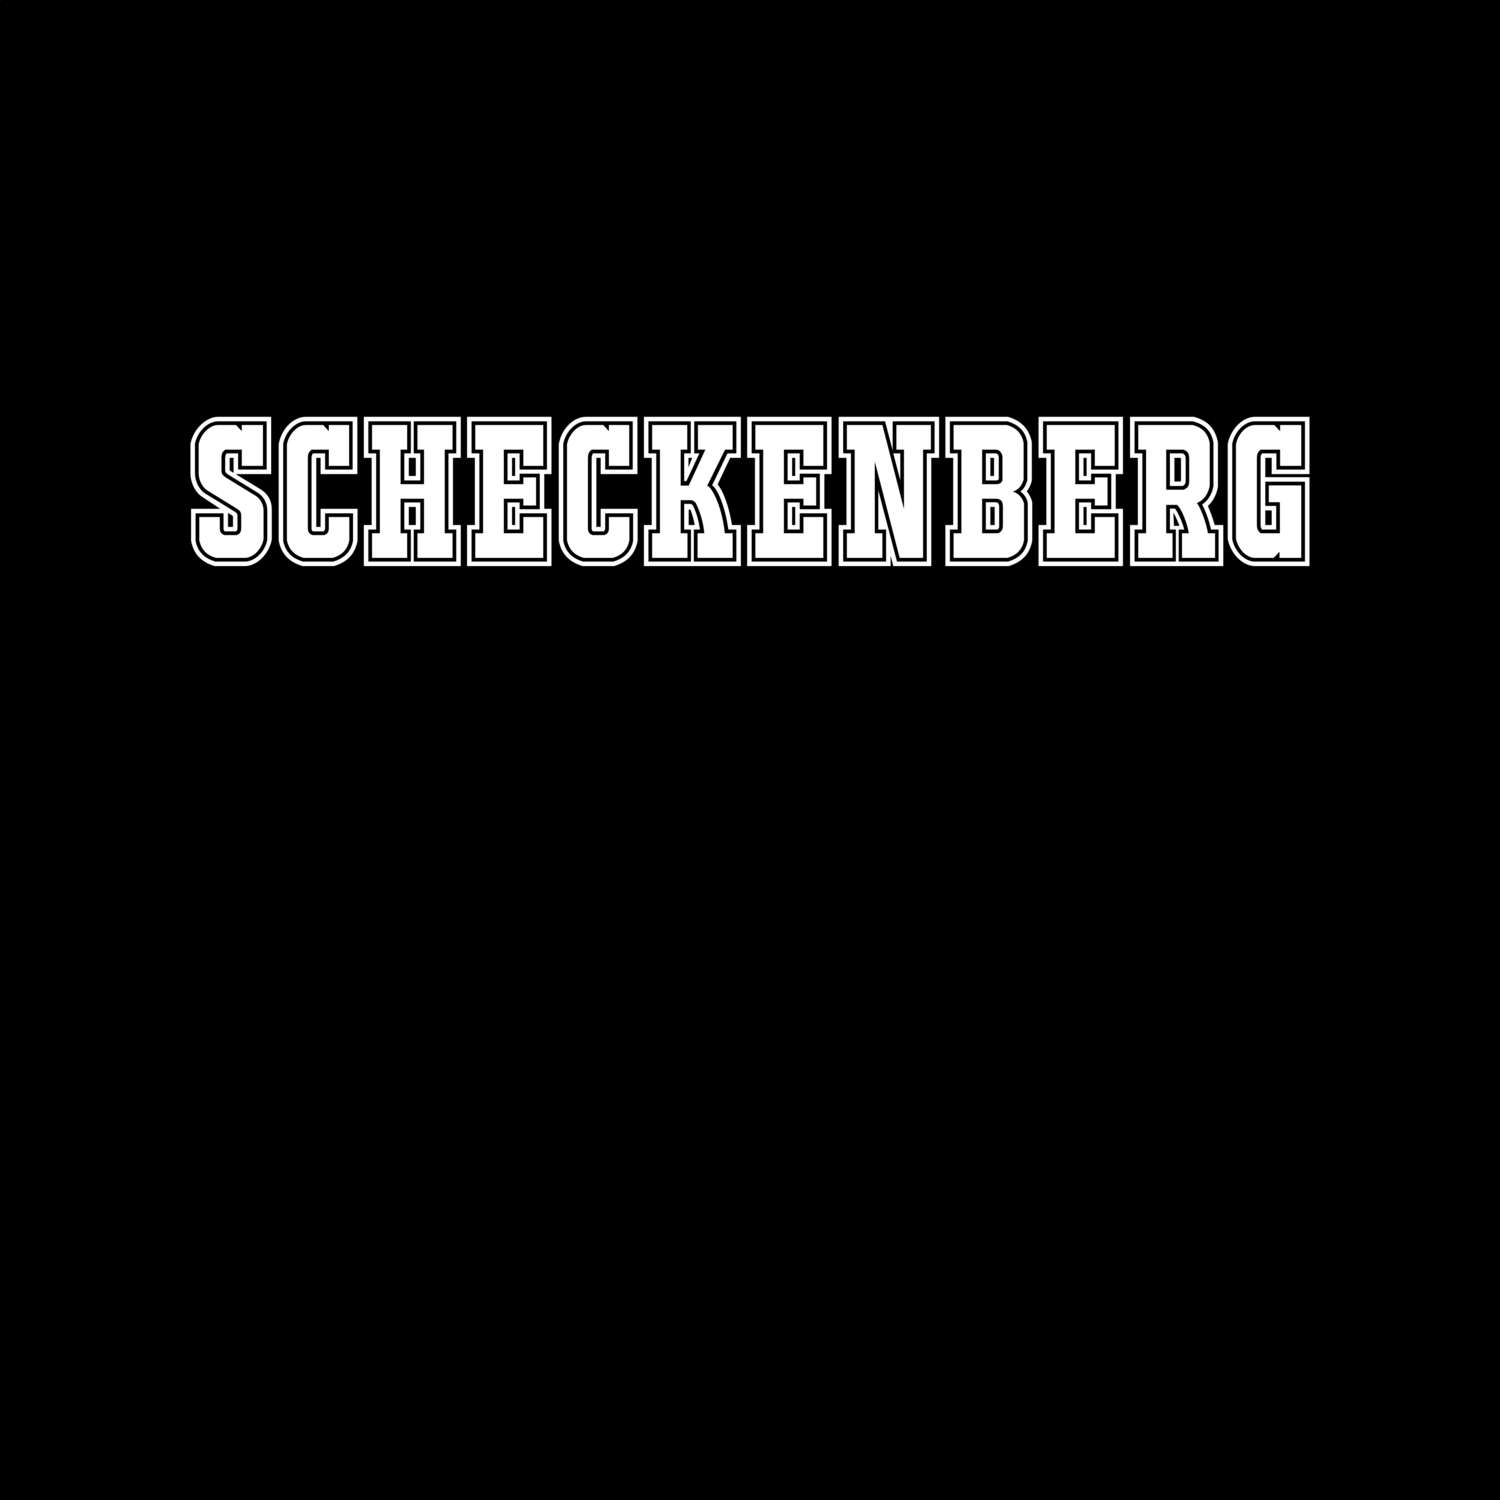 Scheckenberg T-Shirt »Classic«